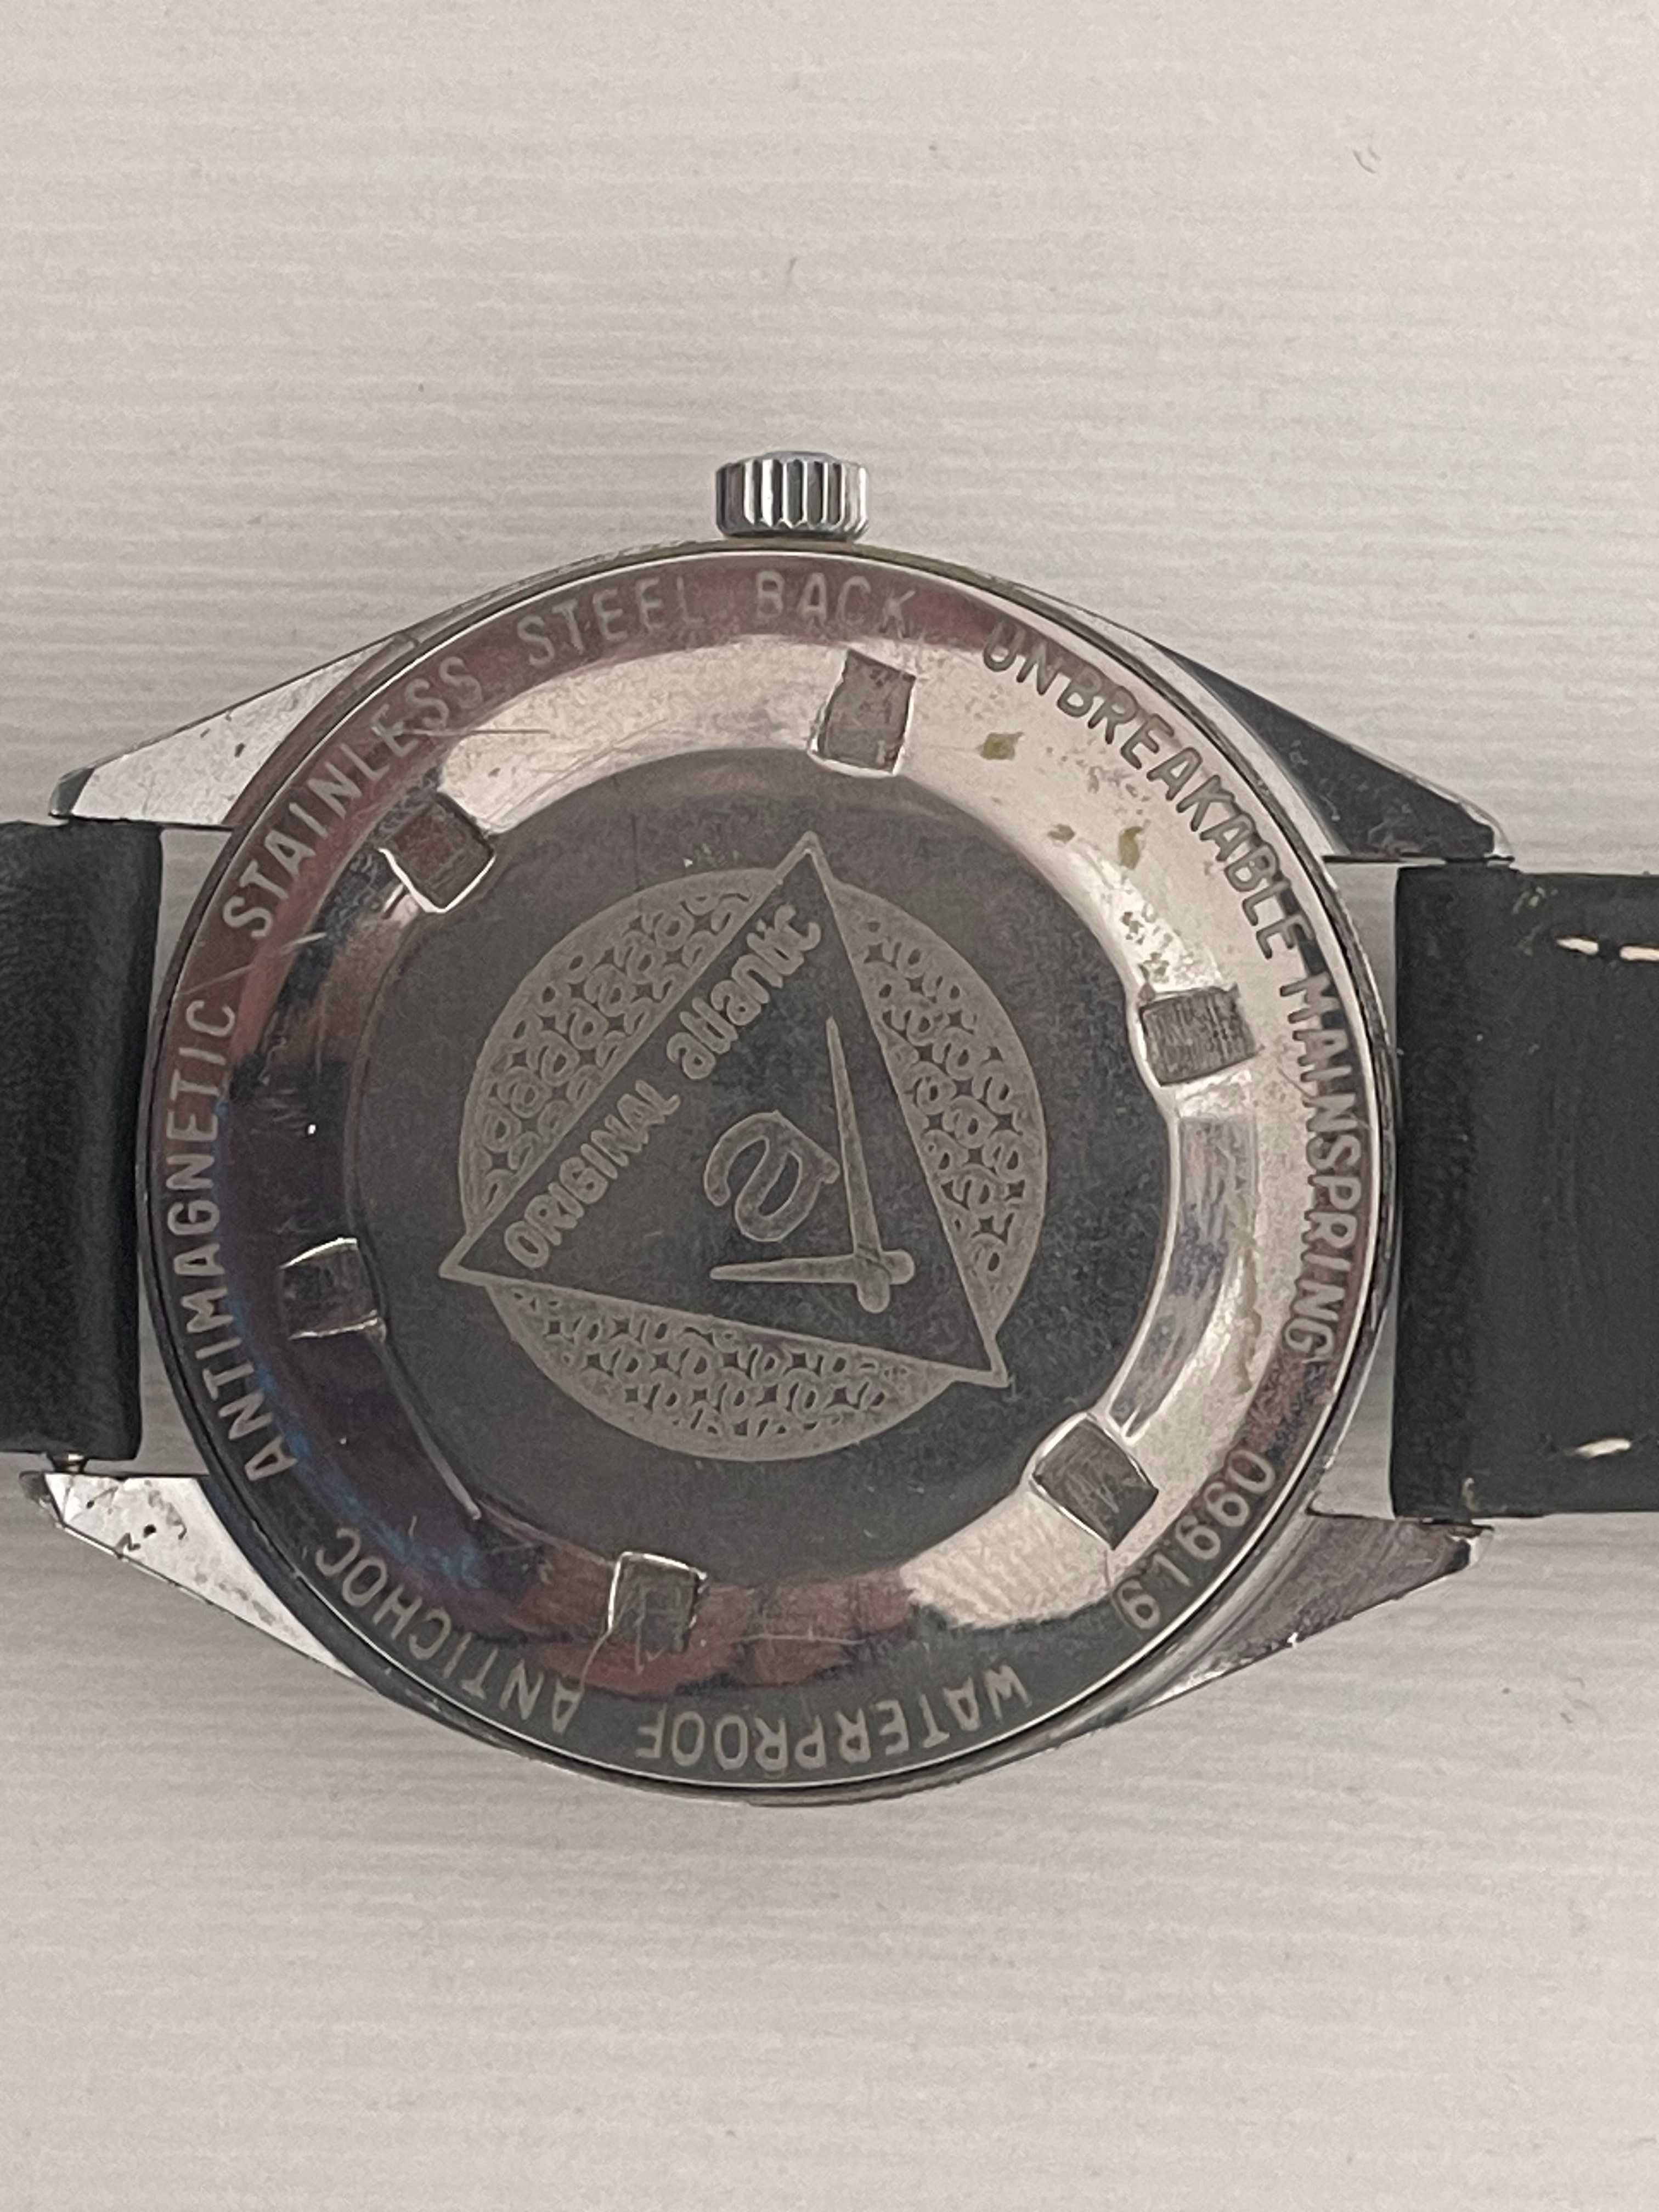 Zegarek Atlantic Worldmaster oryginał